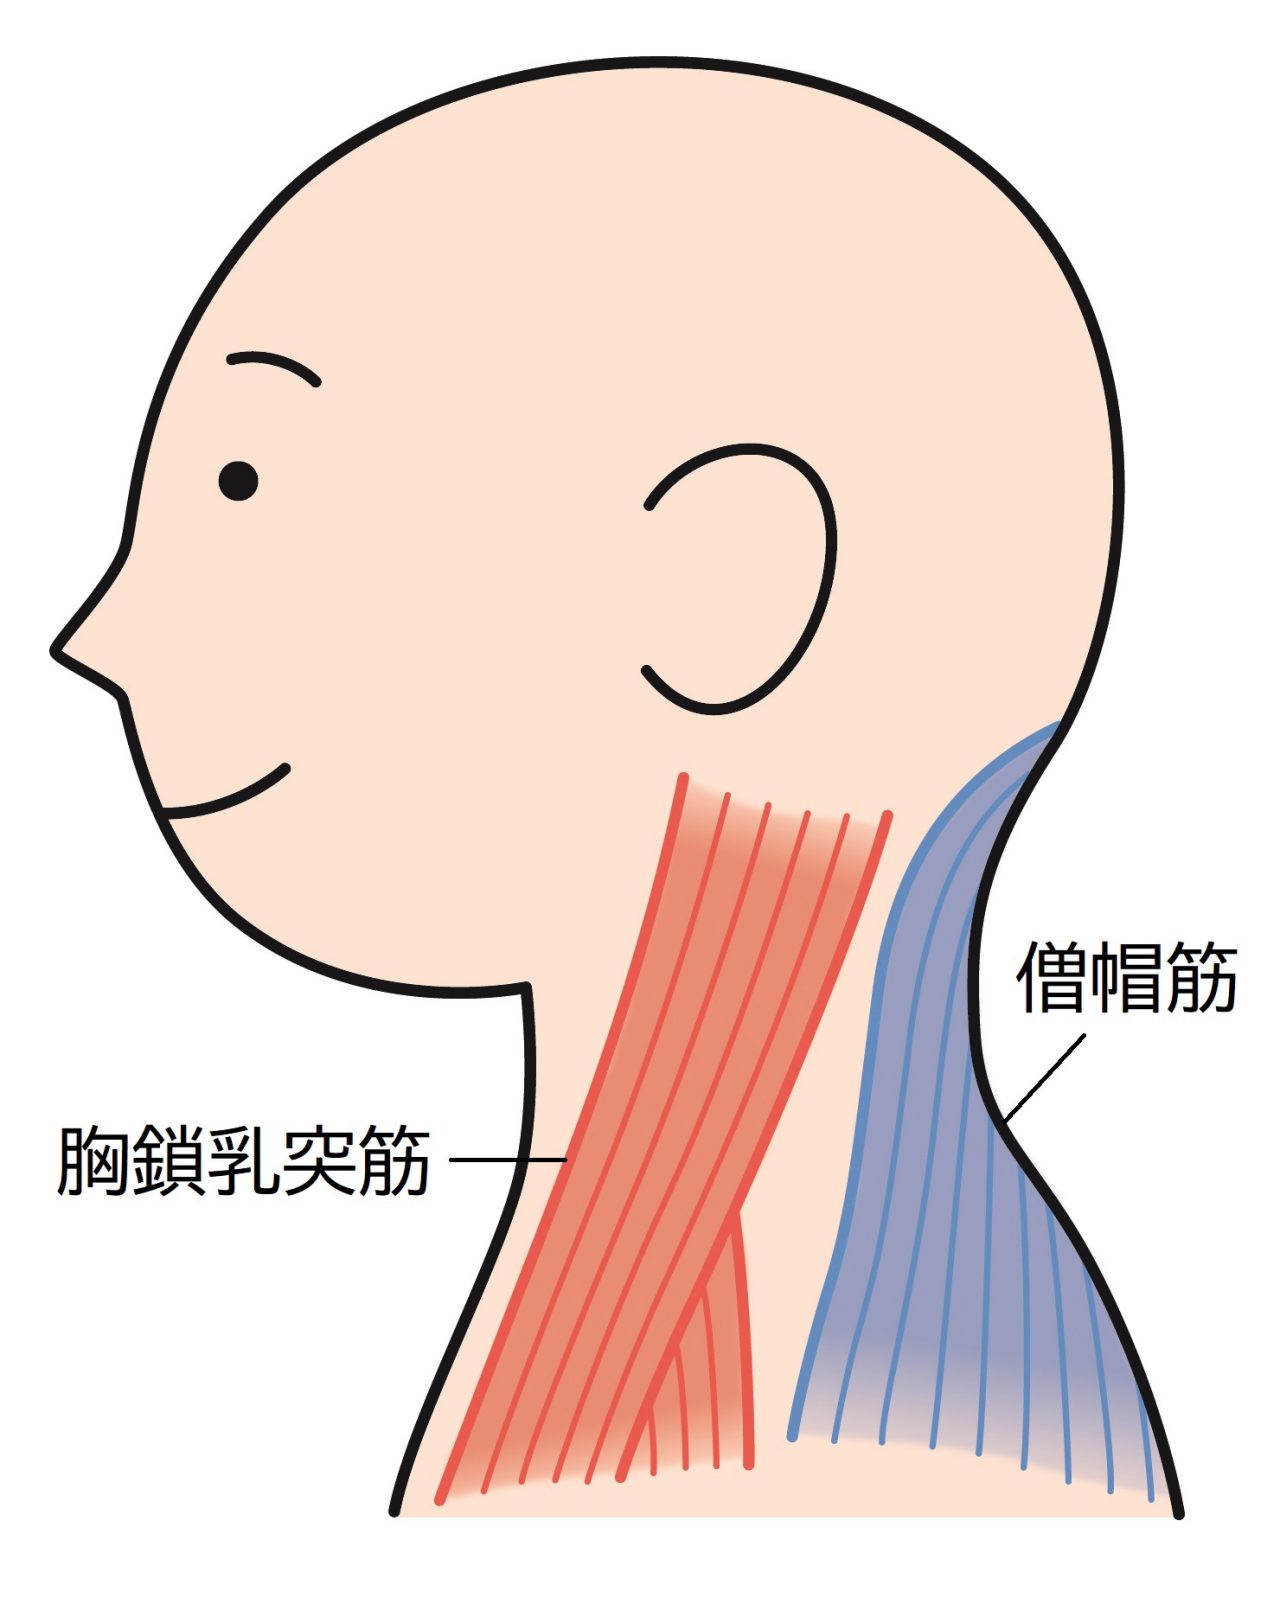 耳の下から胸に向かって伸びる胸鎖乳突筋や首の後ろにある僧帽筋を押して、強い痛みがあれば慢性上咽頭炎の可能性があります。